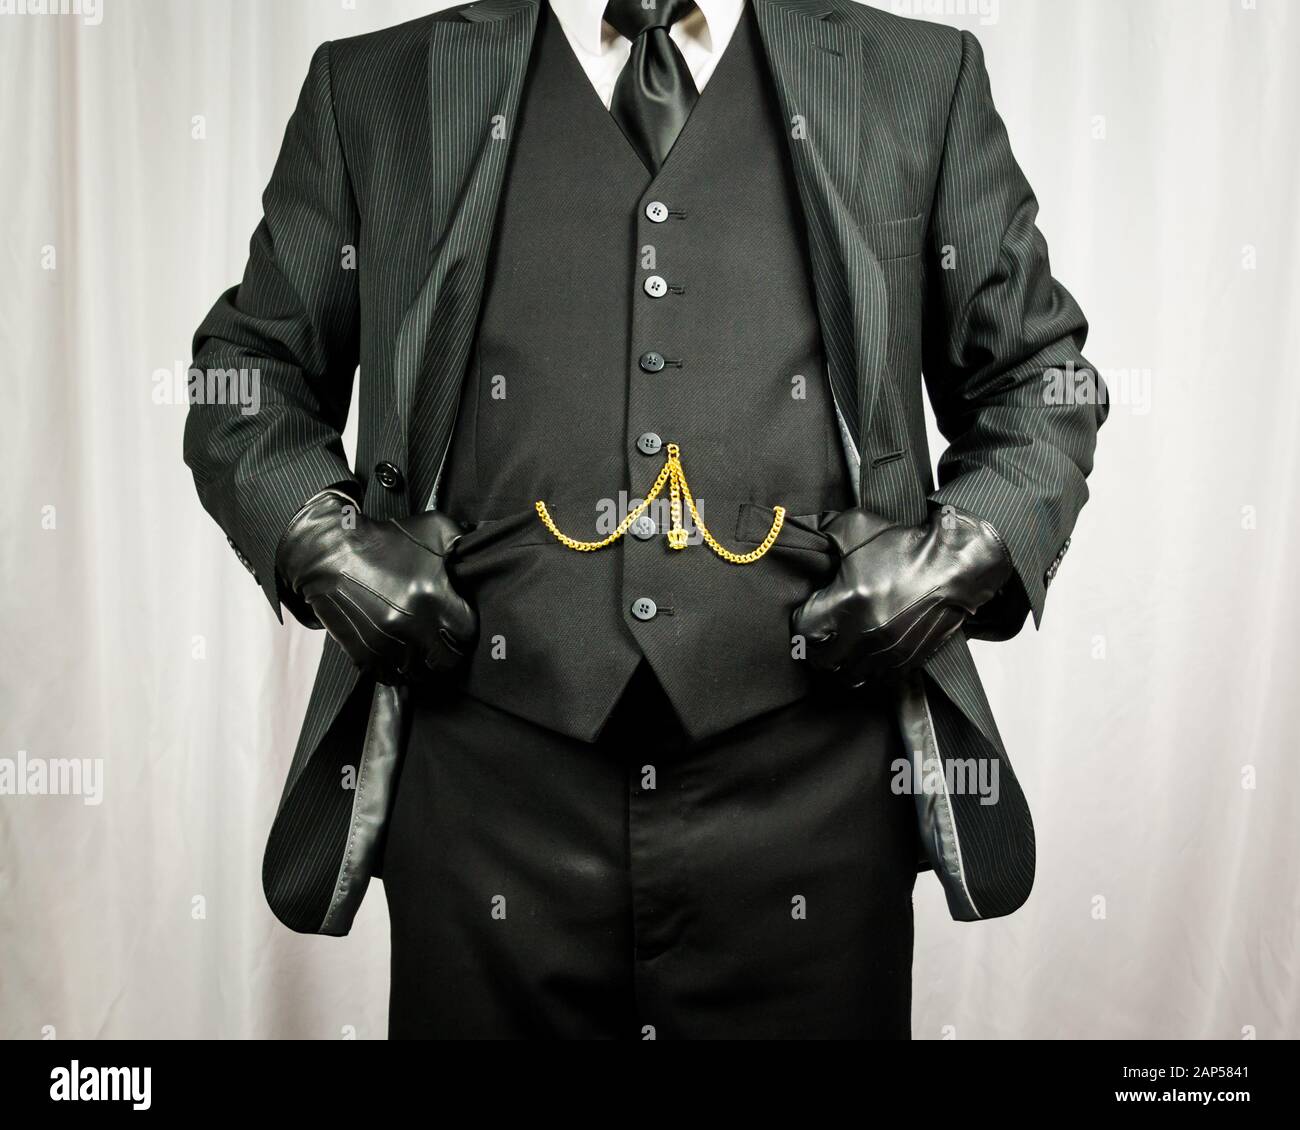 Un Hombre Elegante Y Atractivo Que Usa Guantes De Cuero Negro Al Aire Libre  Foto de archivo - Imagen de guantes, color: 254569060